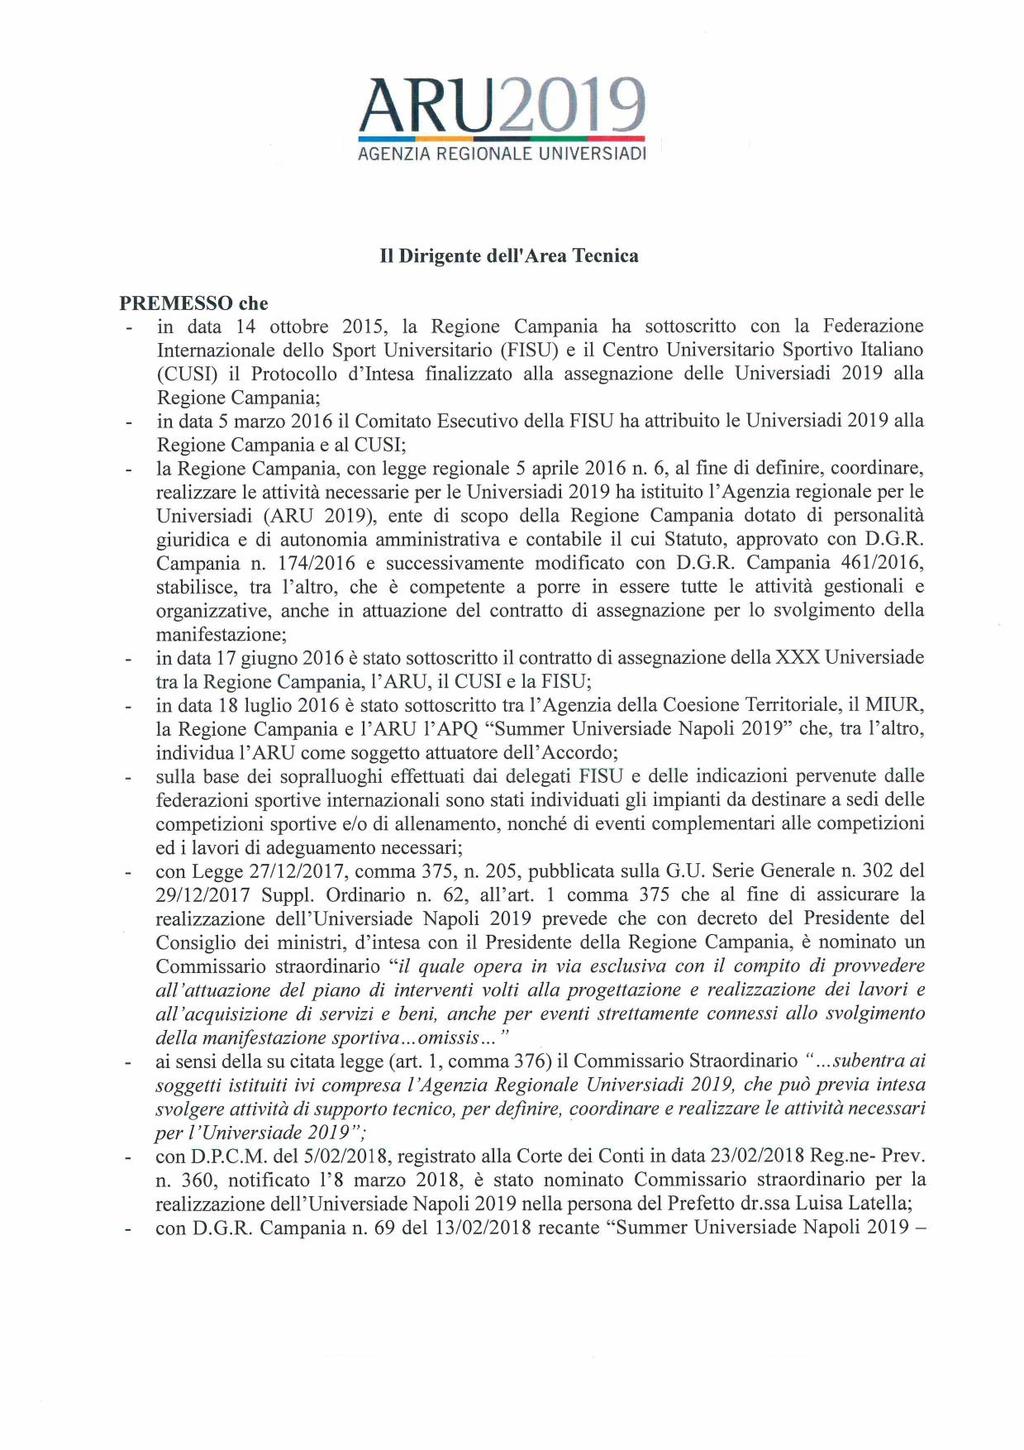 ARI! 2019 Il Dirigente dell'area Tecnica PREMESSO che in data 14 ottobre 2015, la Regione Campania ha sottoscritto con la Federazione Intemazionale dello Sport Universitario (FISU) e il Centro